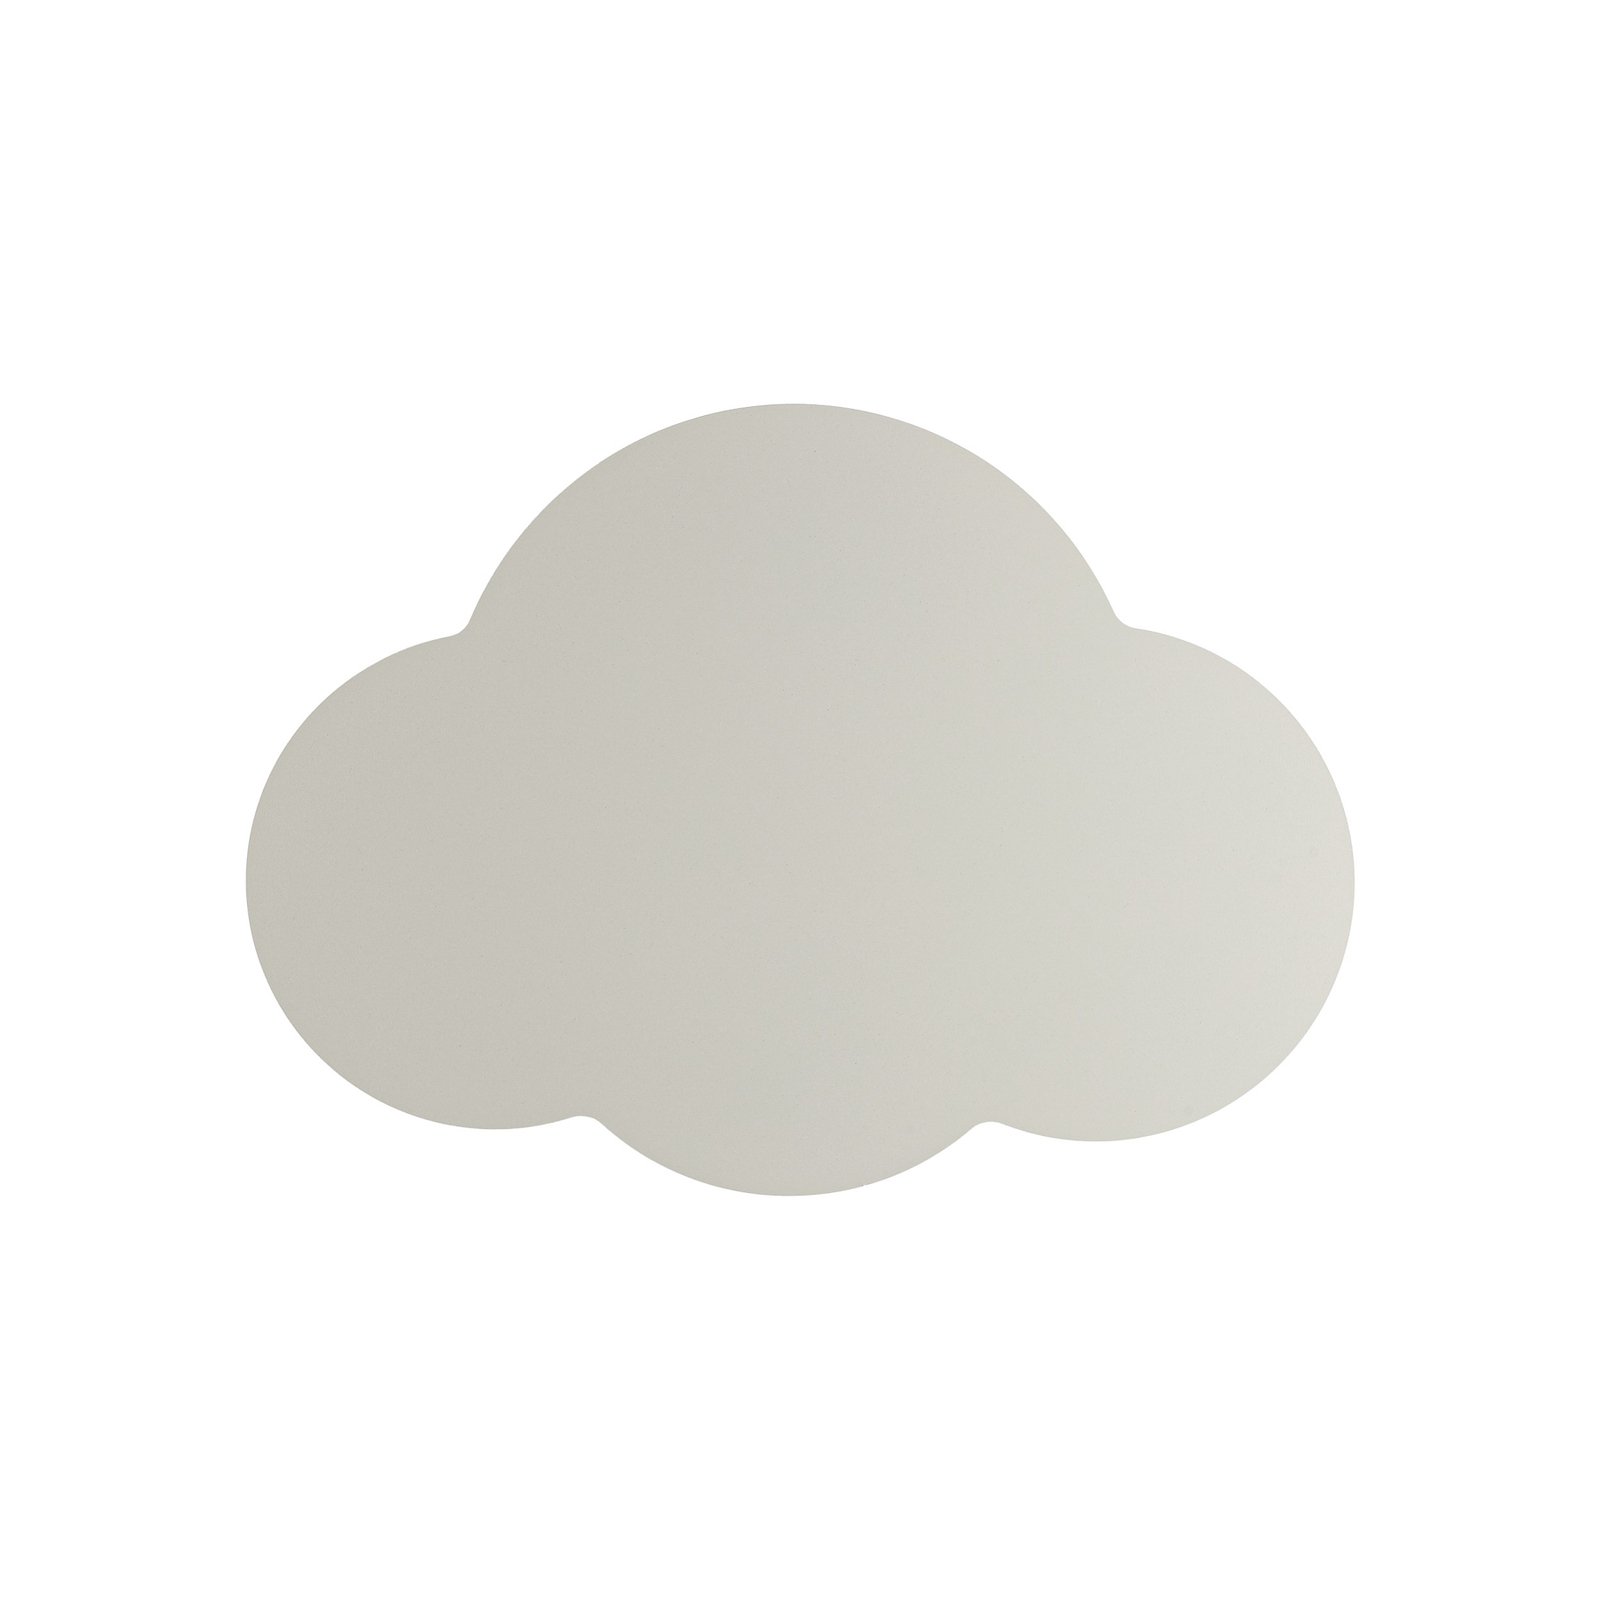 Wandlampe Cloud, beige, Stahl, indirektes Licht, 38 x 27 cm